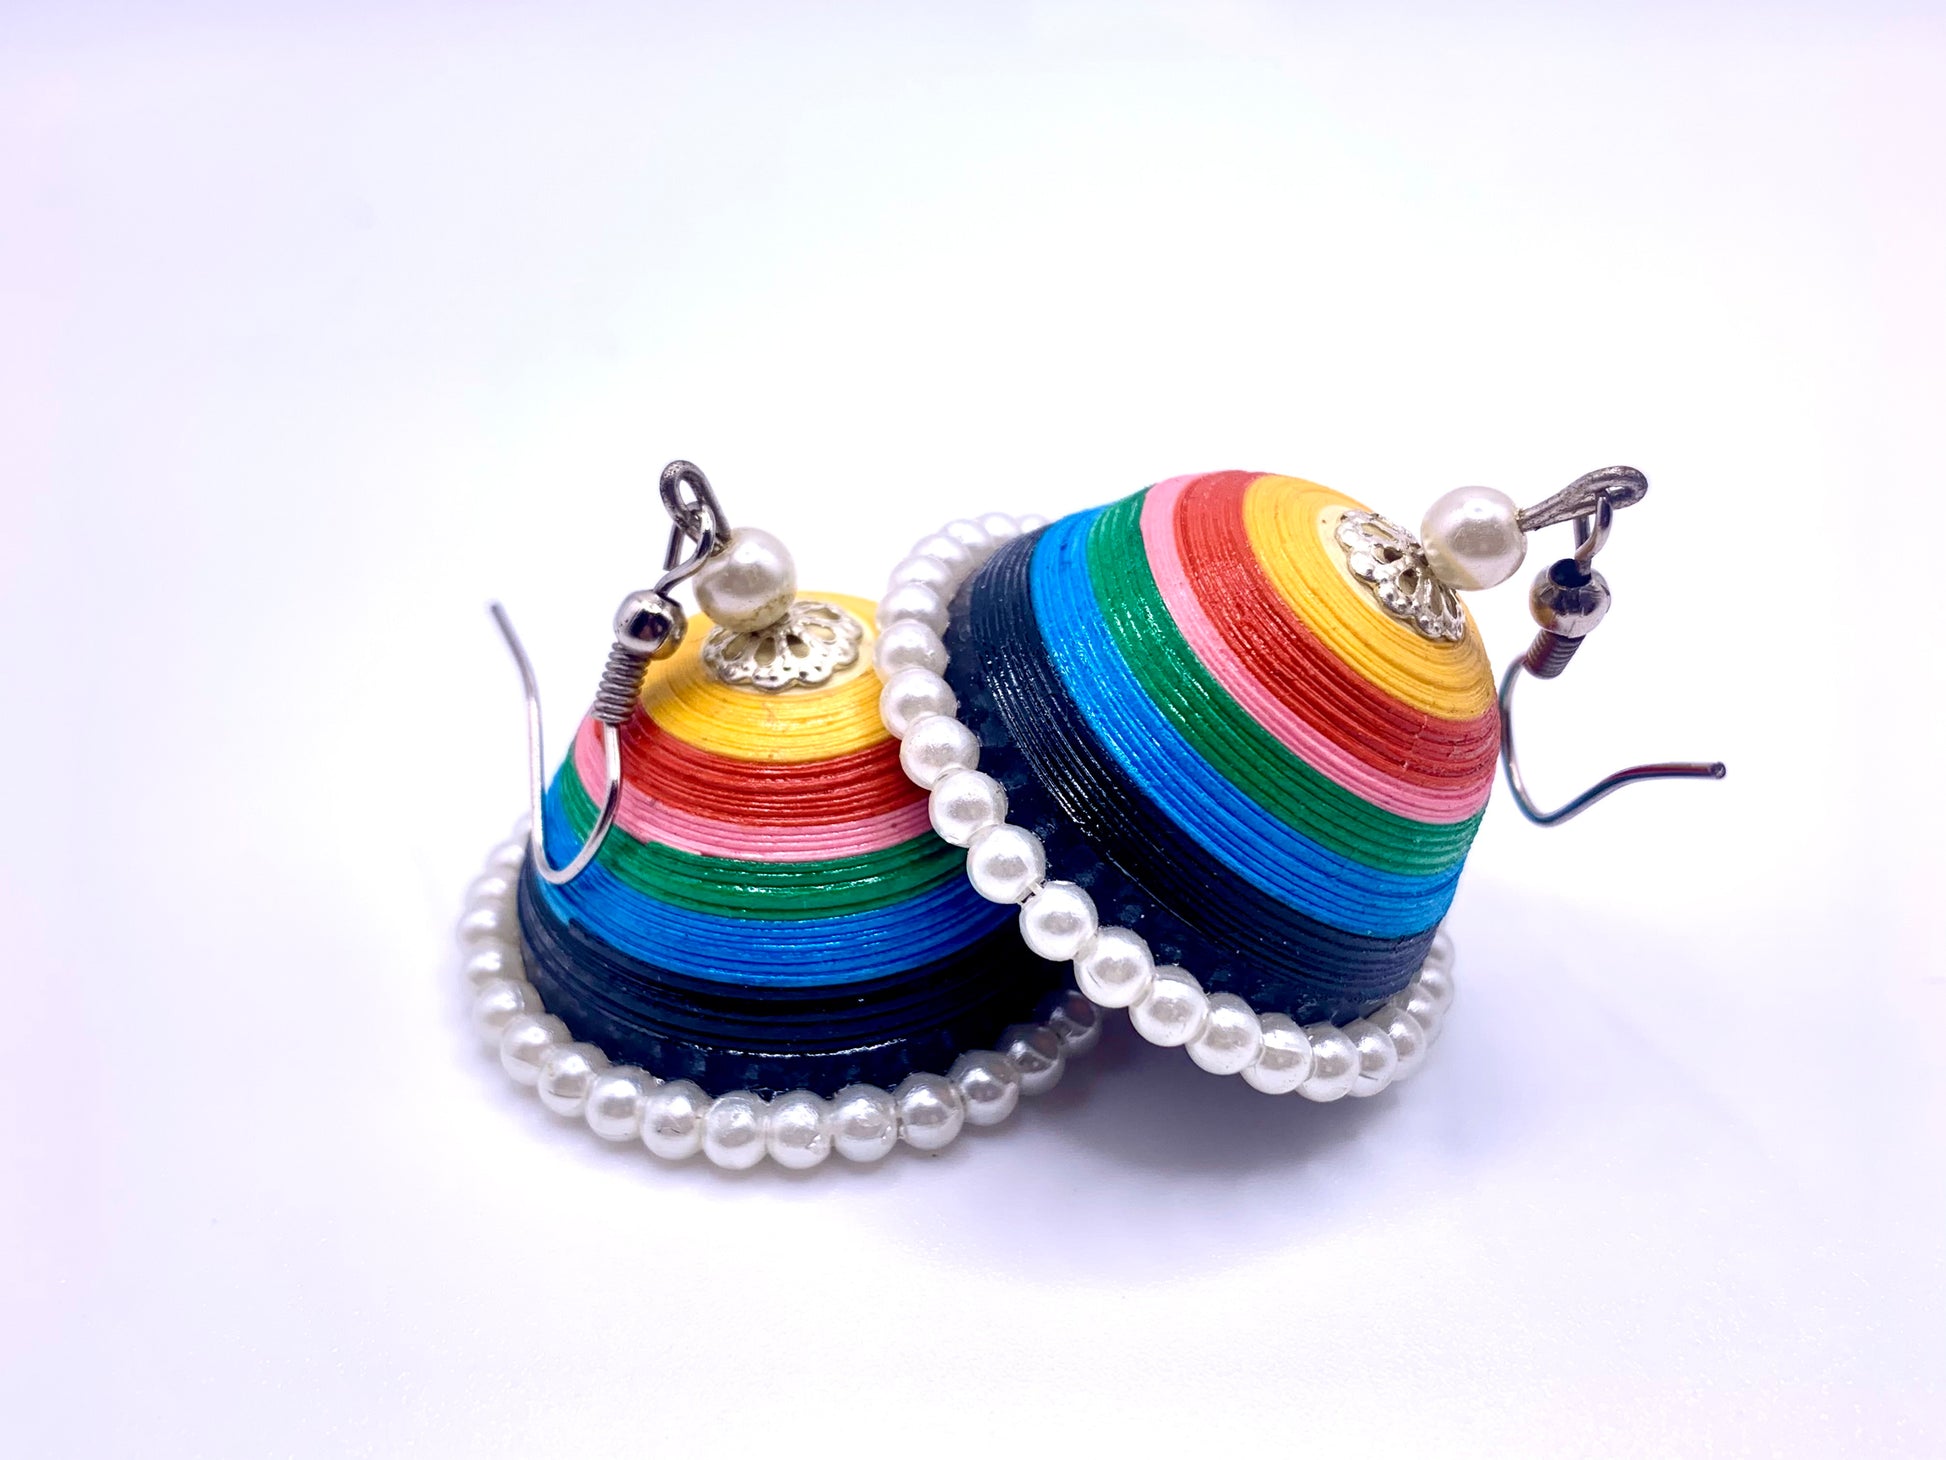 Crochet earrings - directcreate.com